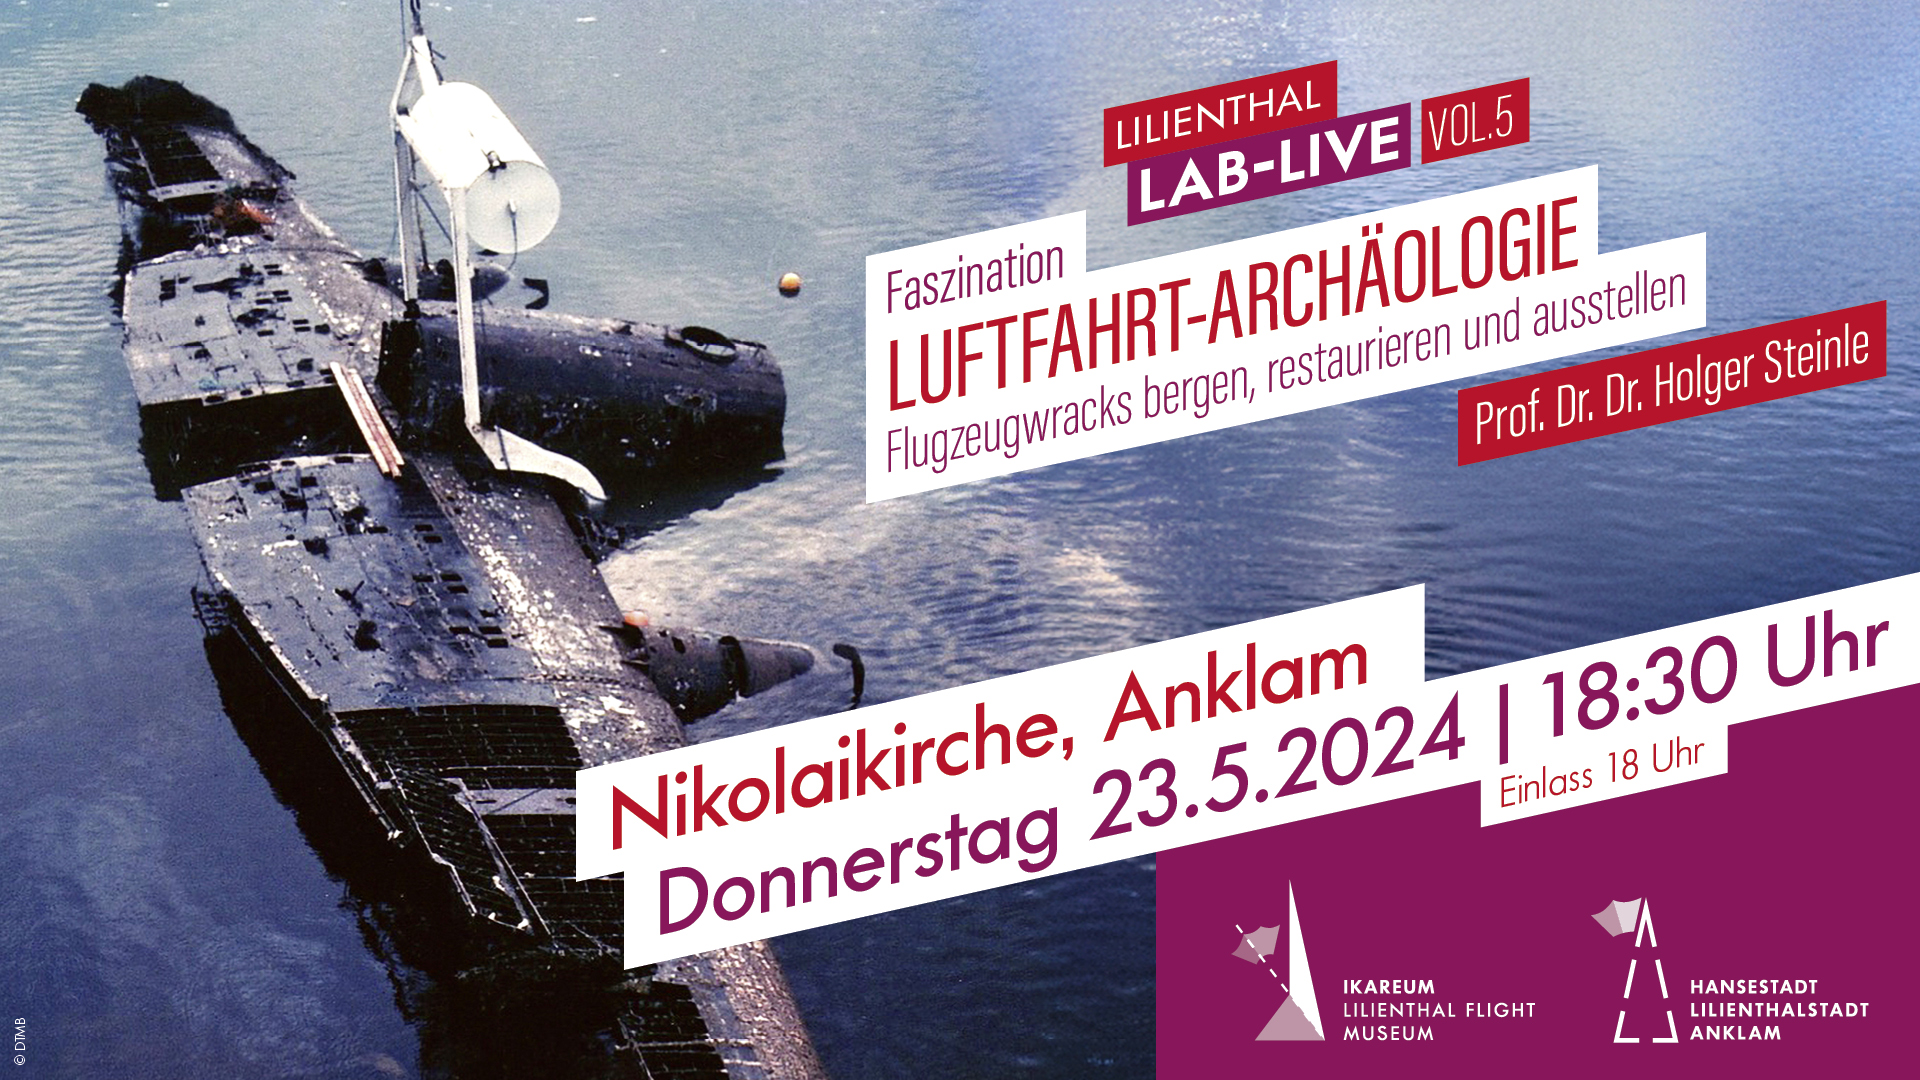 Lilienthal LAB Live - Vol.5